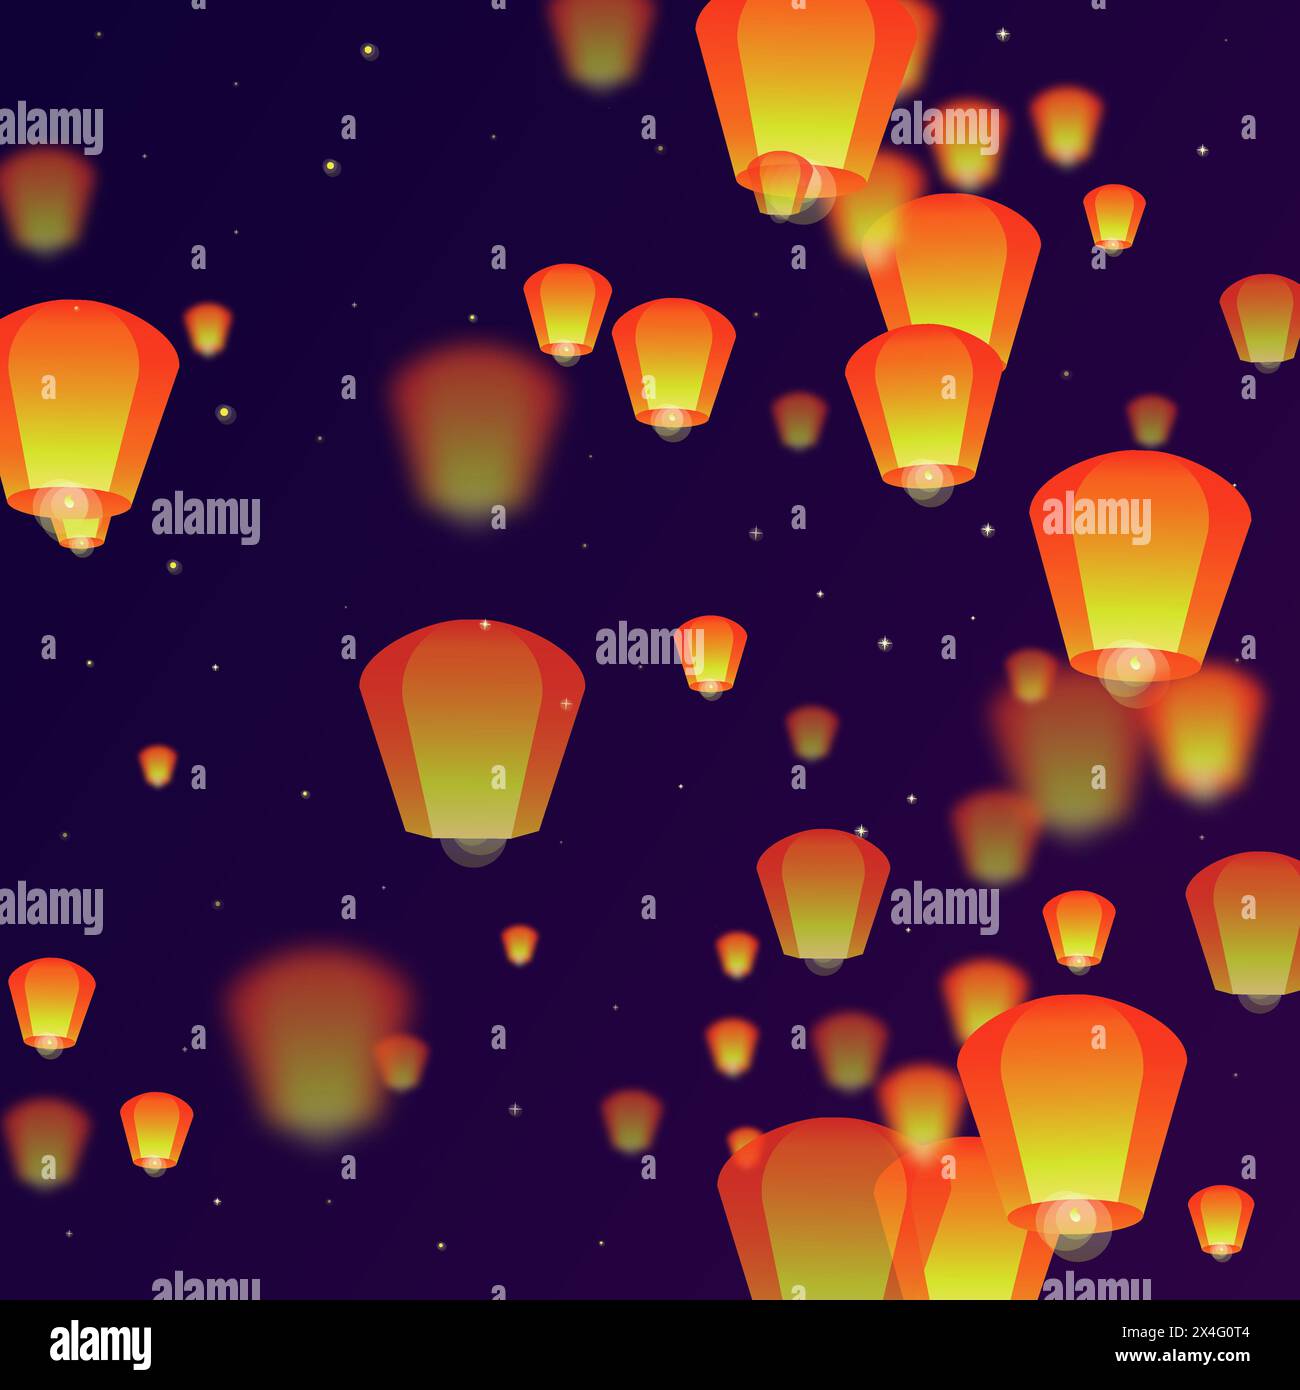 Lanterne che fluttuano nel cielo notturno. Vacanze in Thailandia con lanterne di carta che volano nel cielo notturno. Celebrazioni per il festival delle lanterne. Vettore i Illustrazione Vettoriale